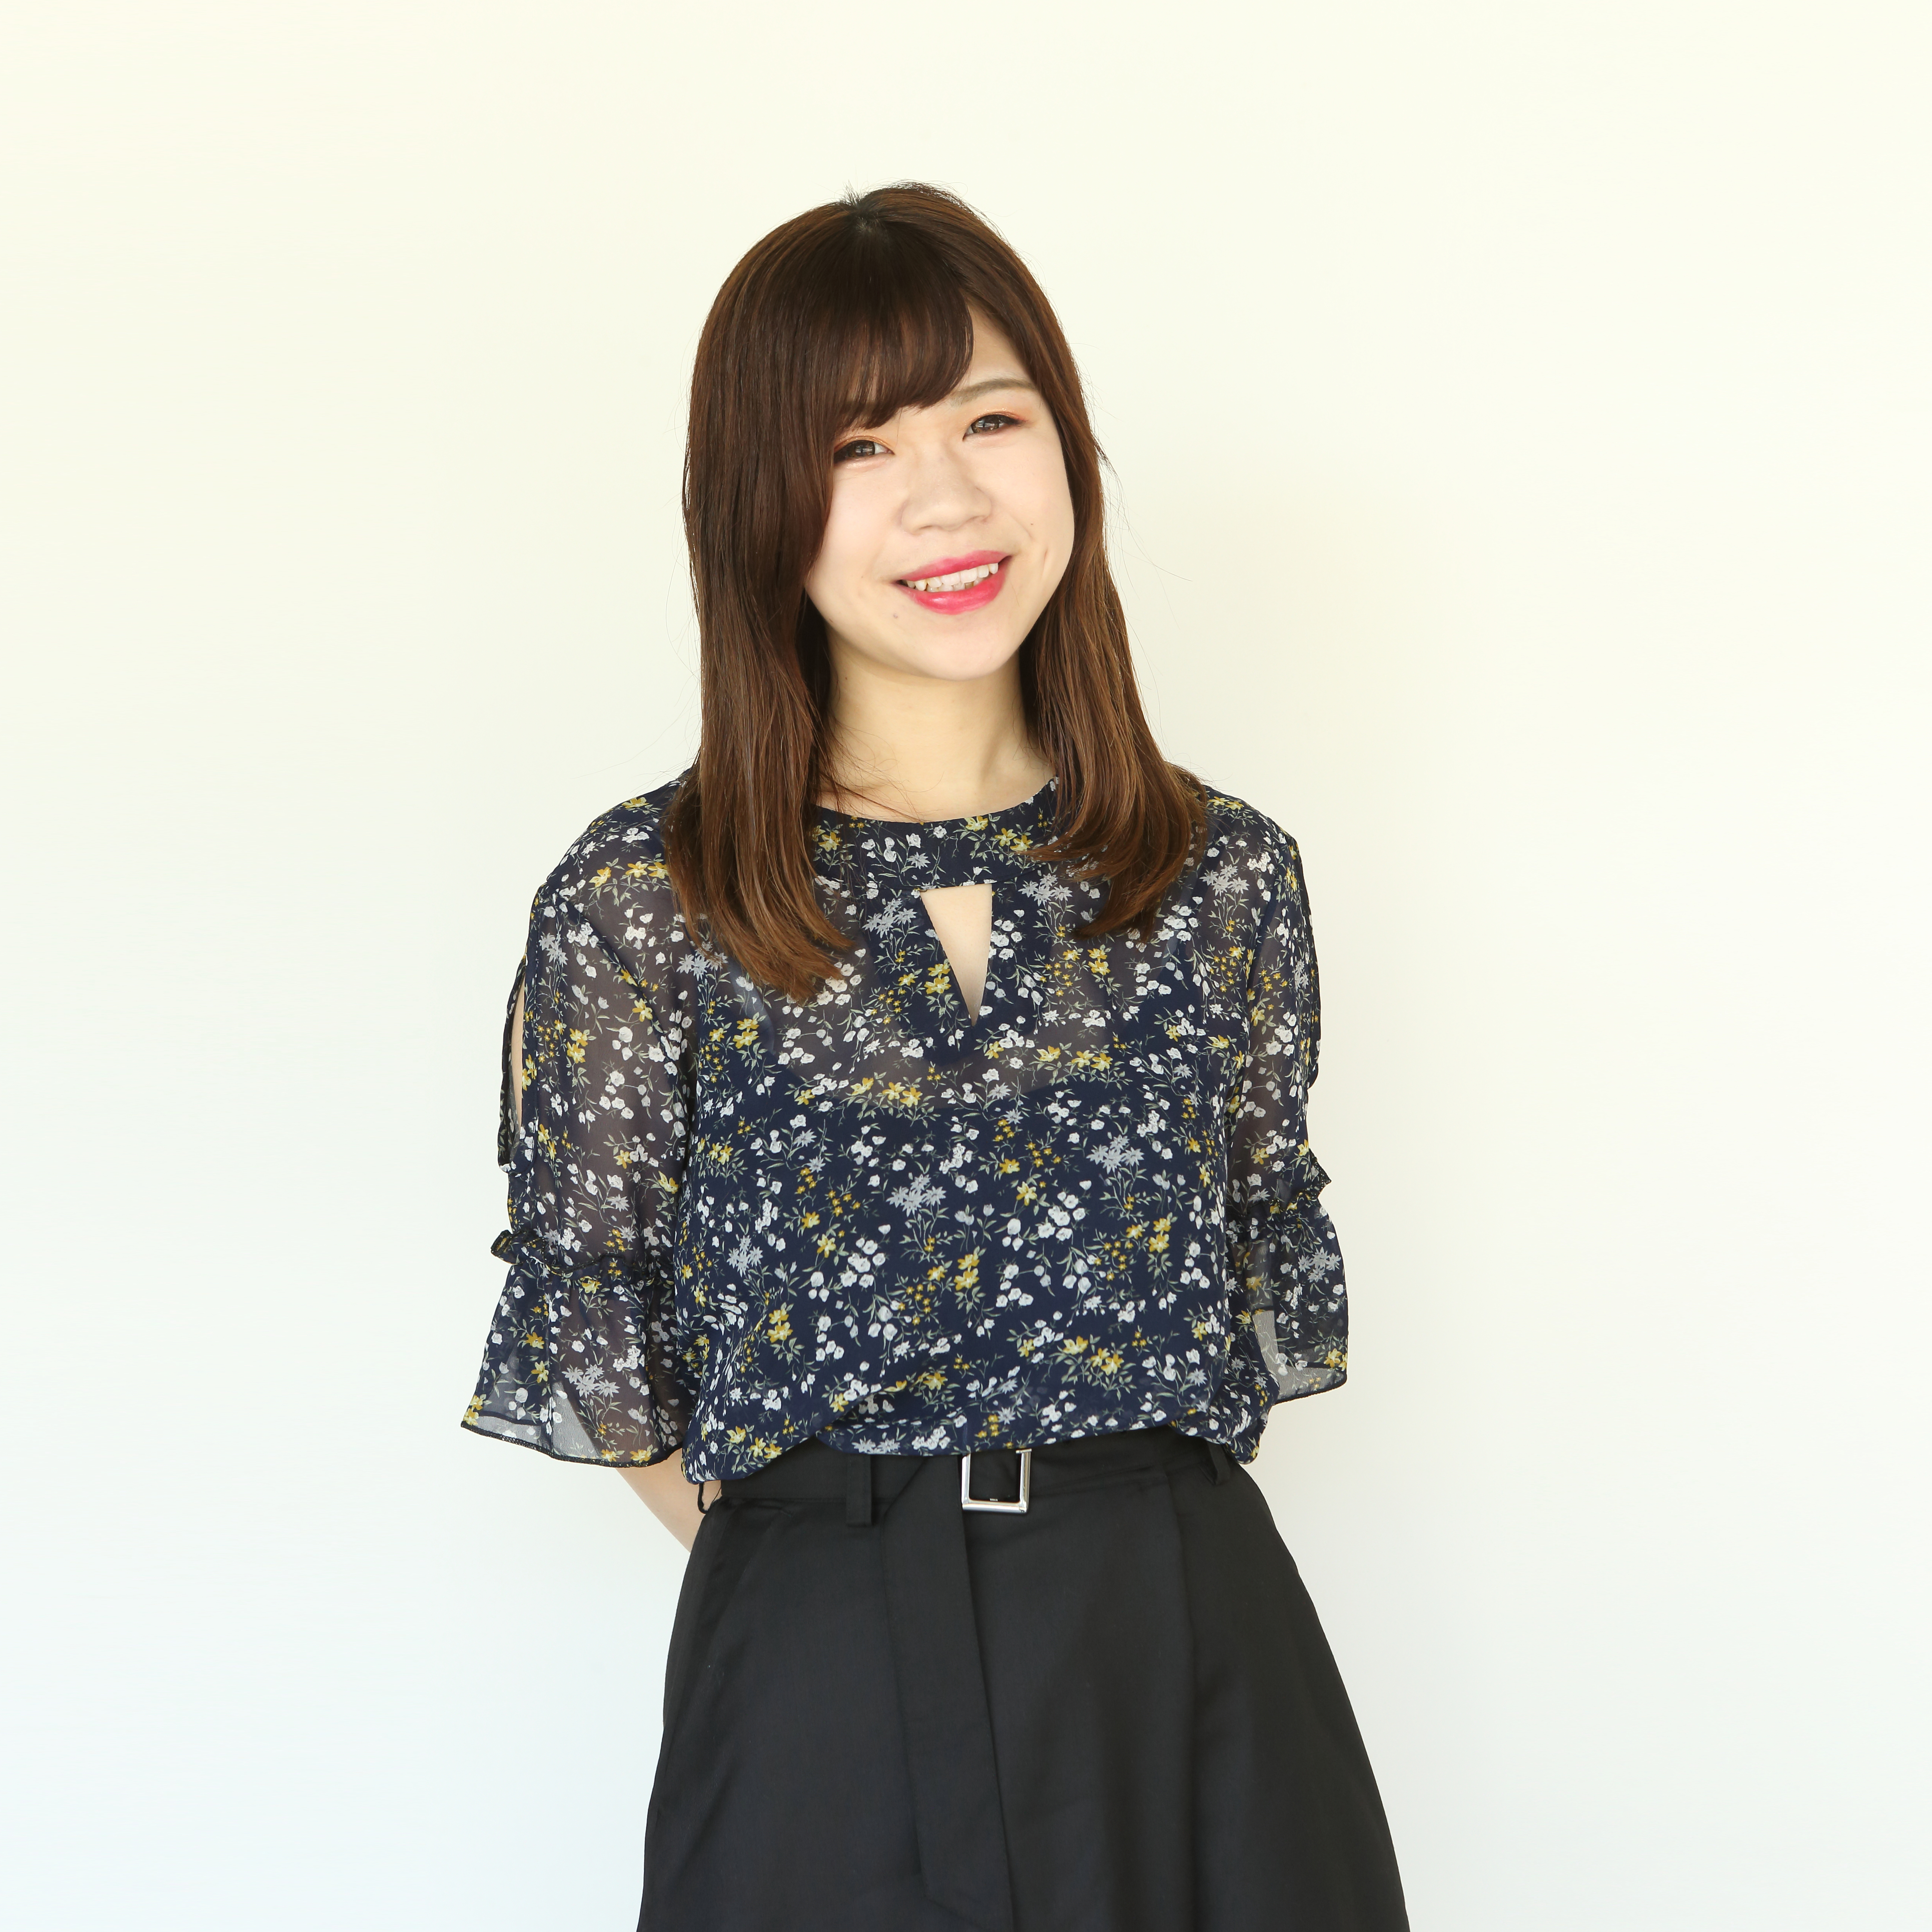 Chisato Tanigawa